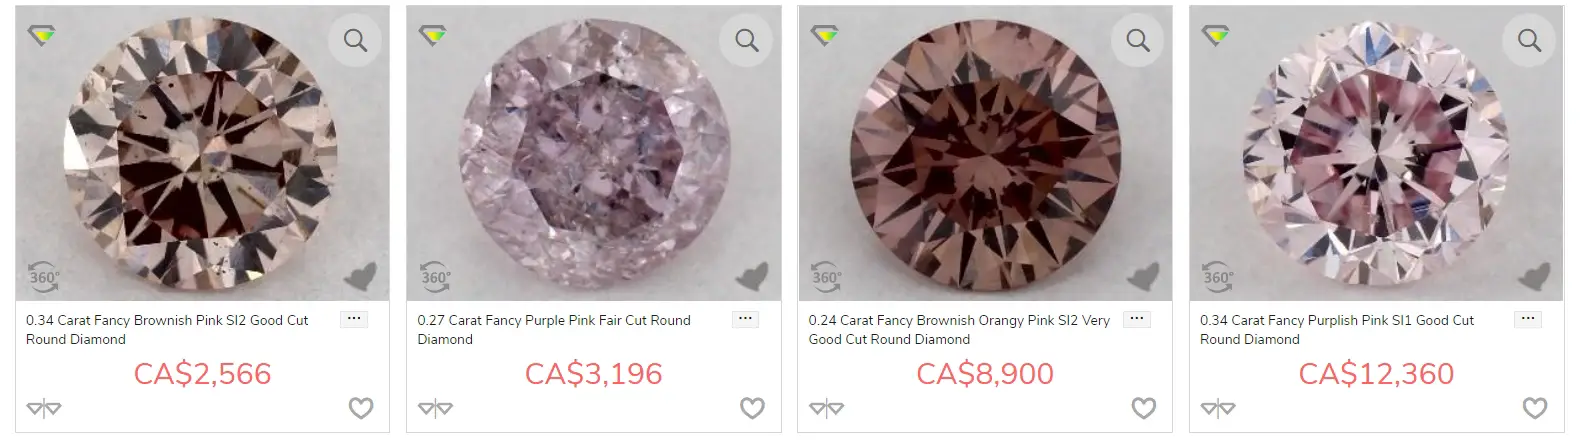 Fancy Pink Diamonds from JamesAllen